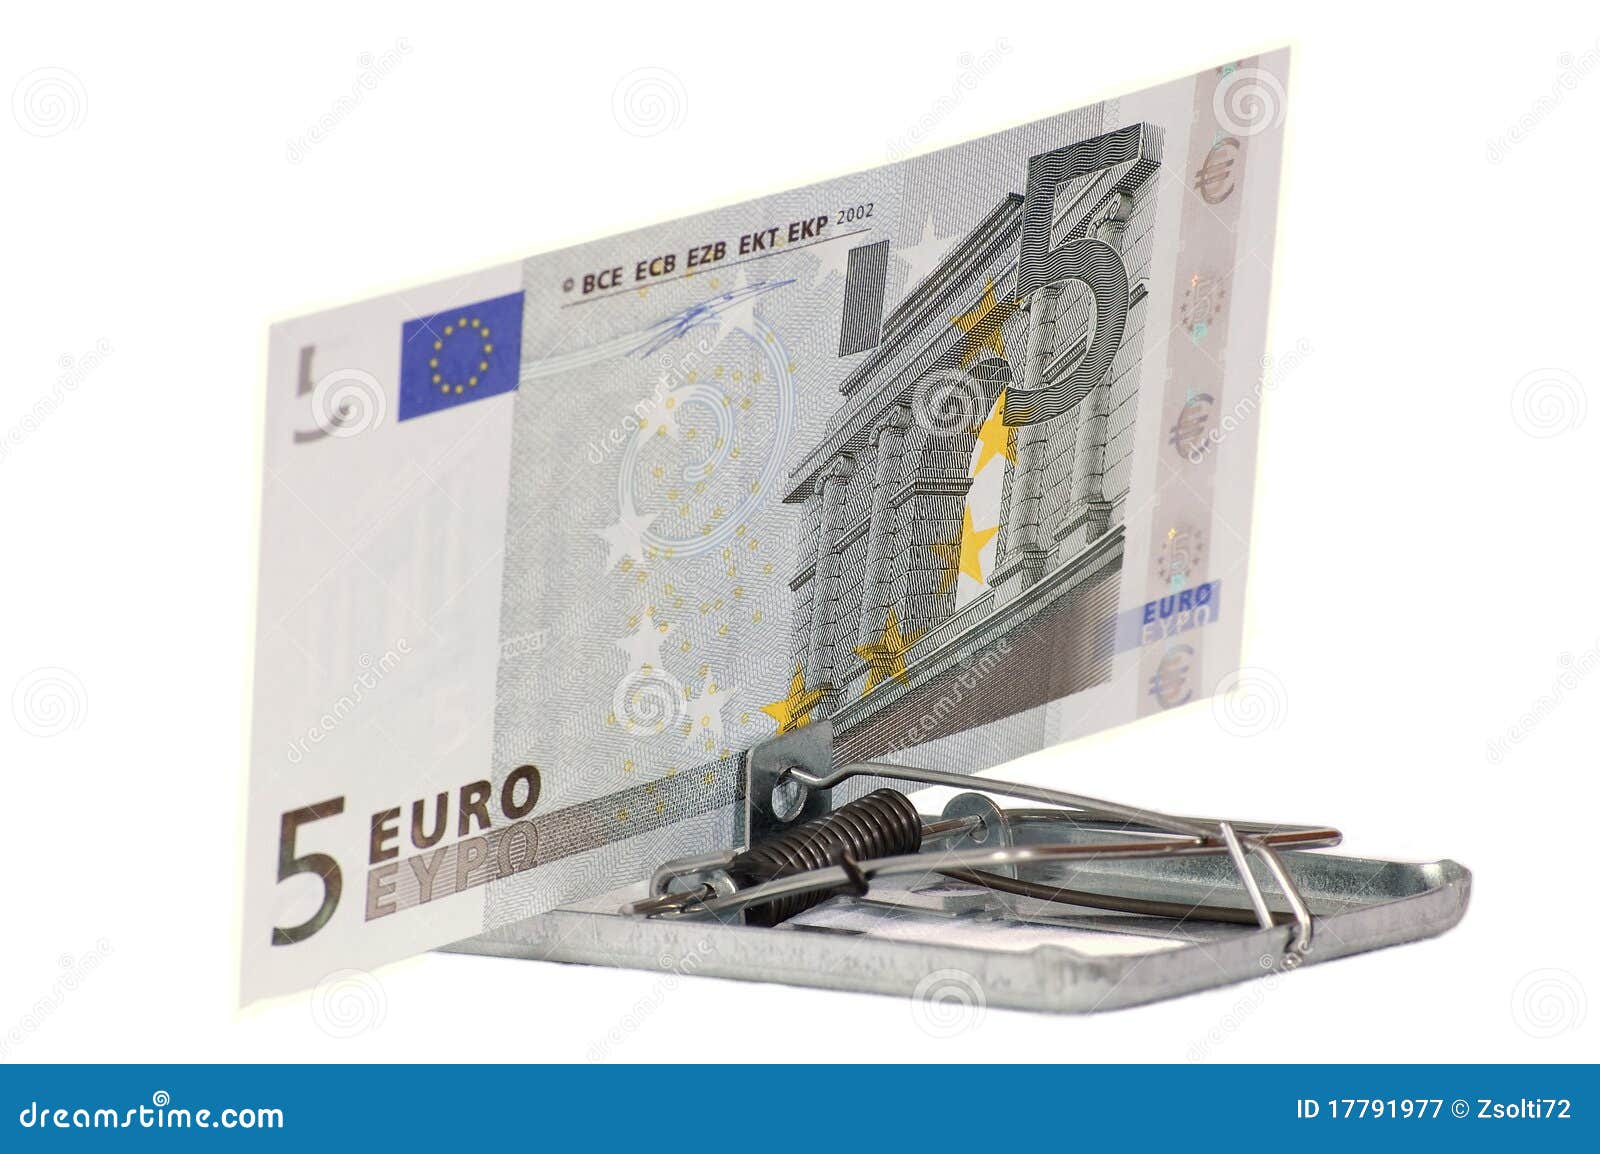 the euro swindle